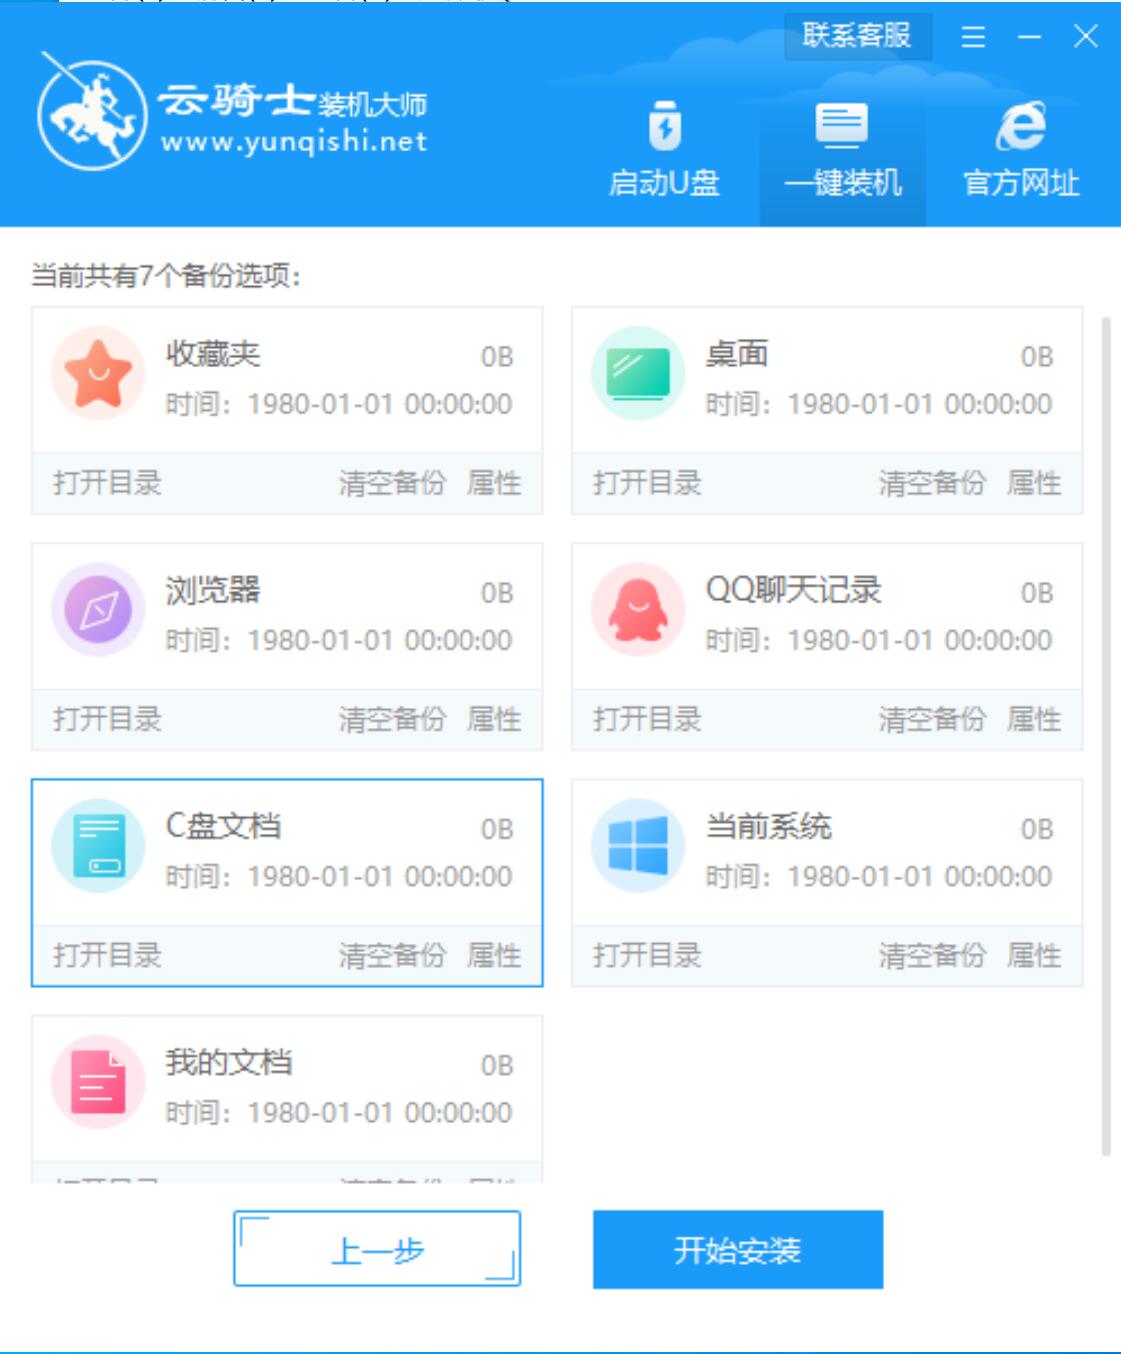 神州笔记本专用系统  WIN7 64位  纯净中文旗舰版系统下载 V2021.07(7)